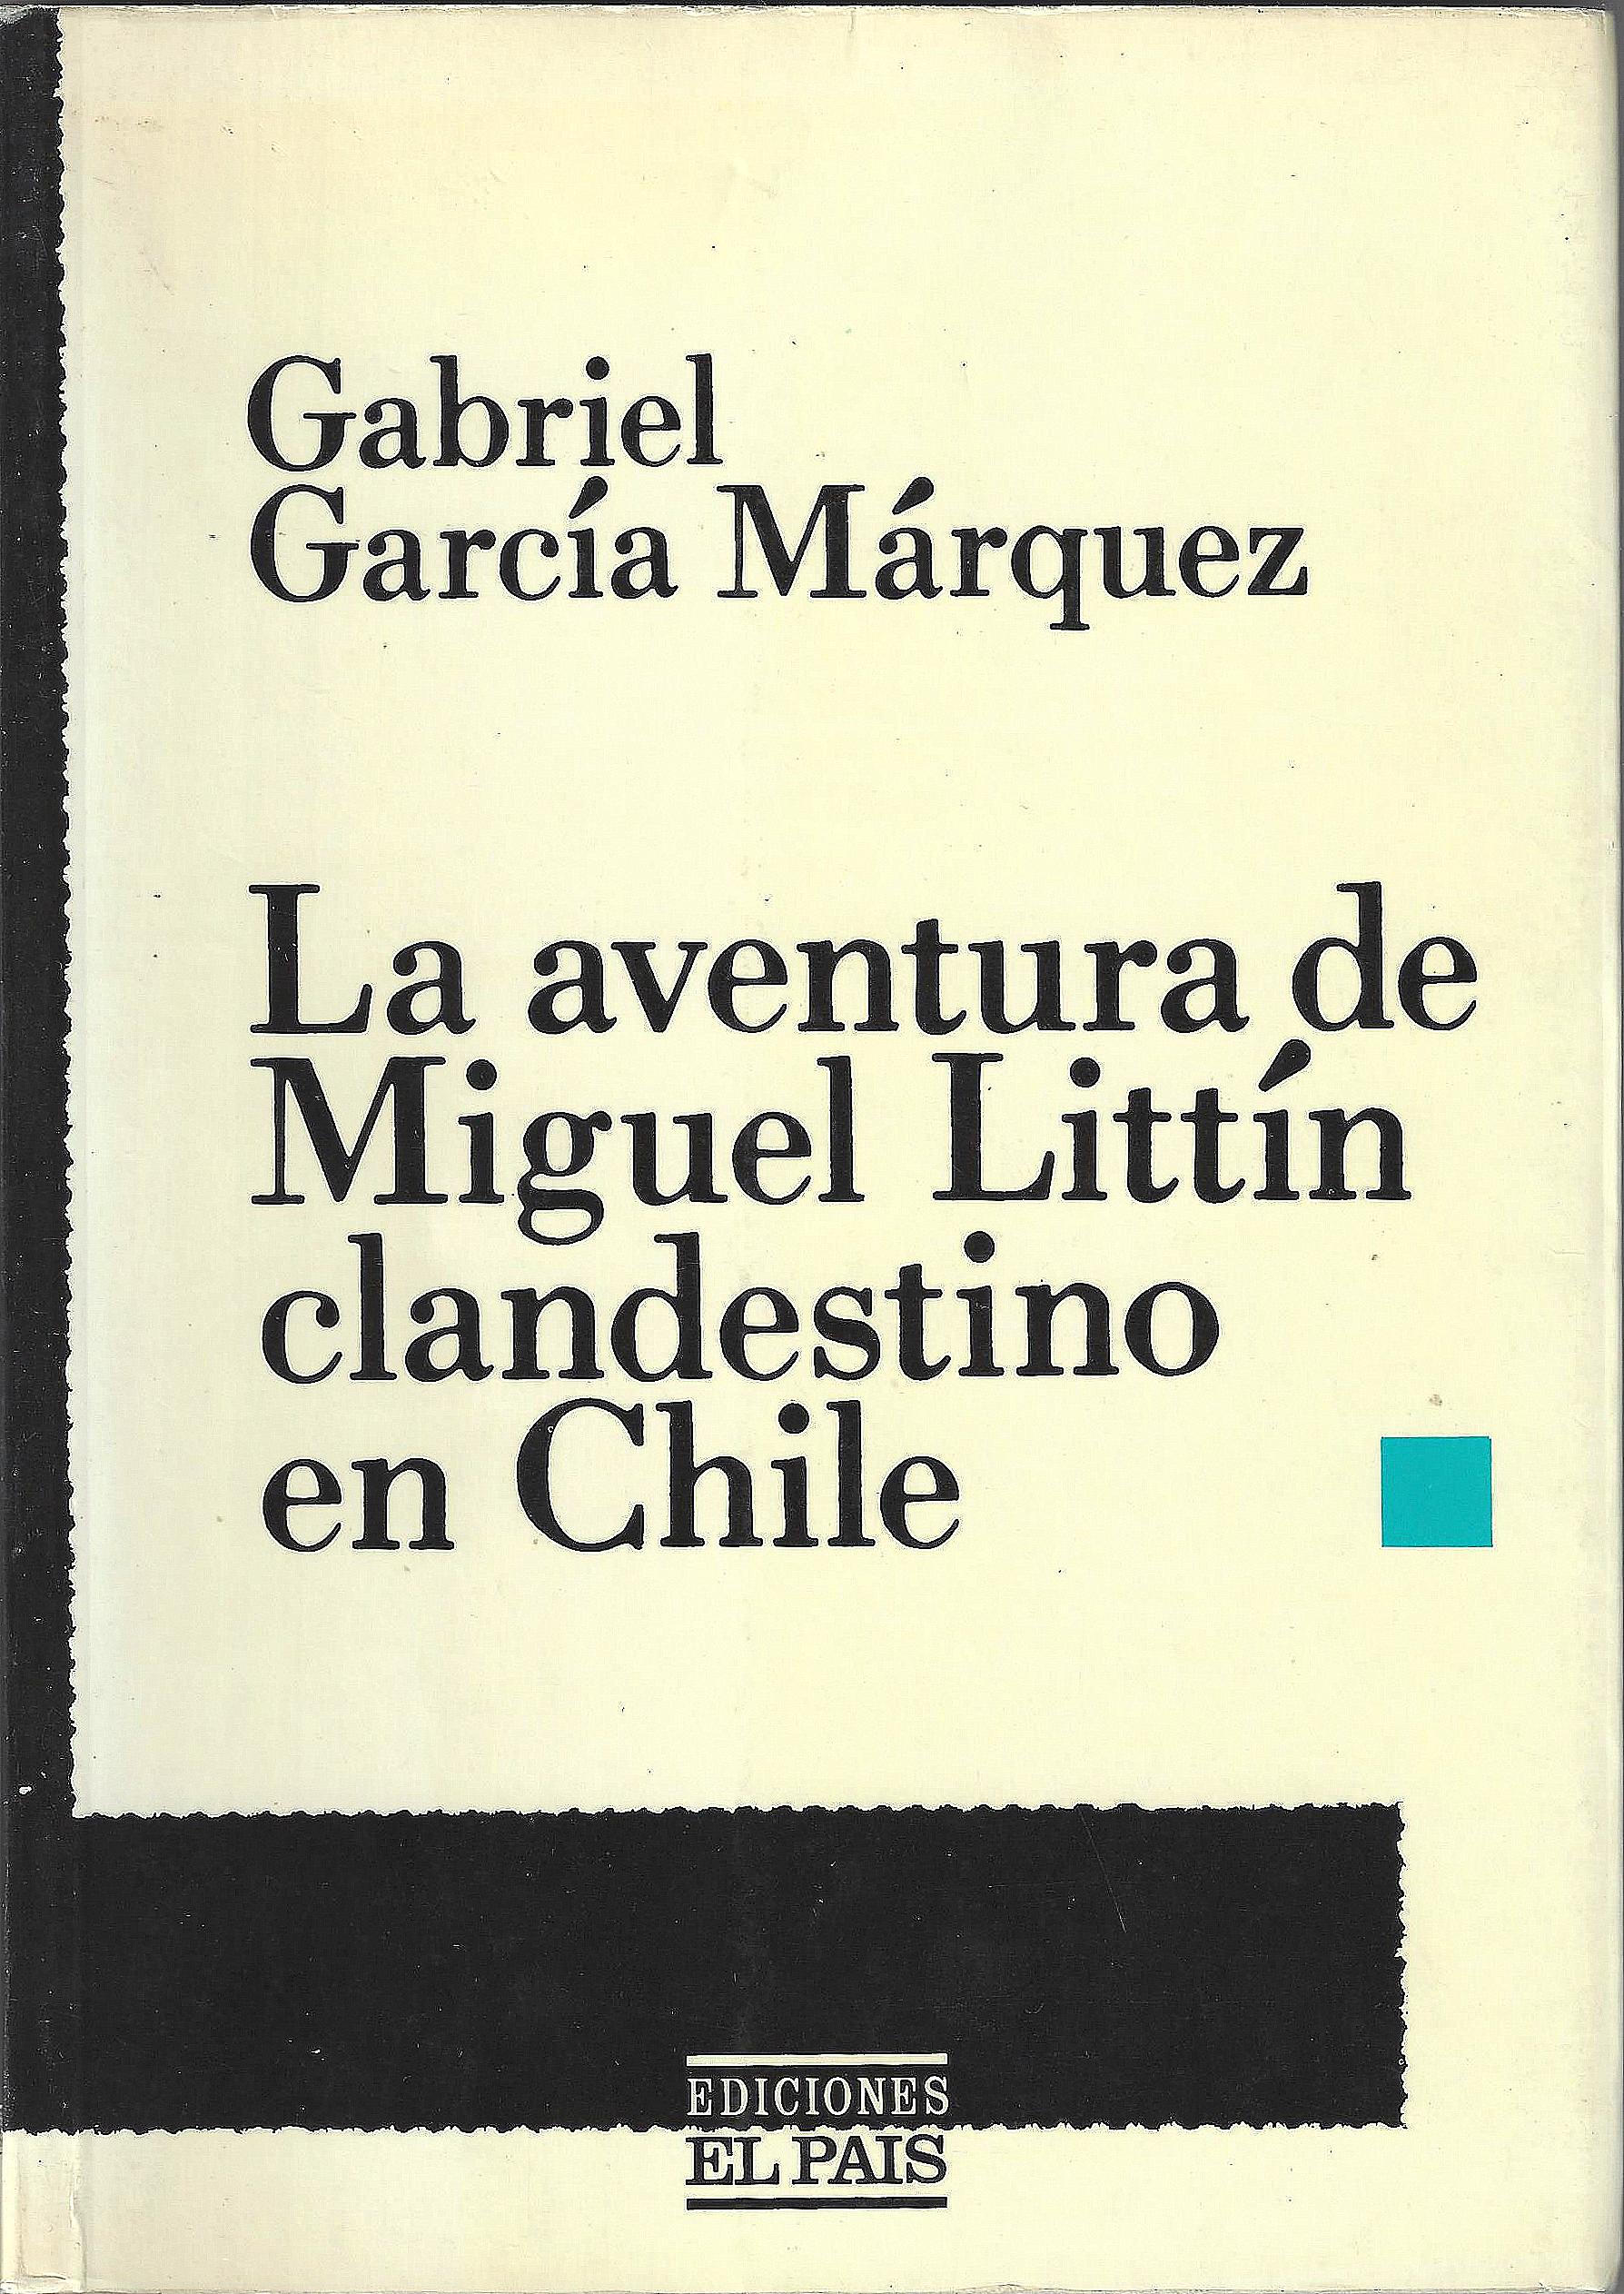 La aventura de Miguel Littin clandestino en Chile - Gabriel Garcia Marquez